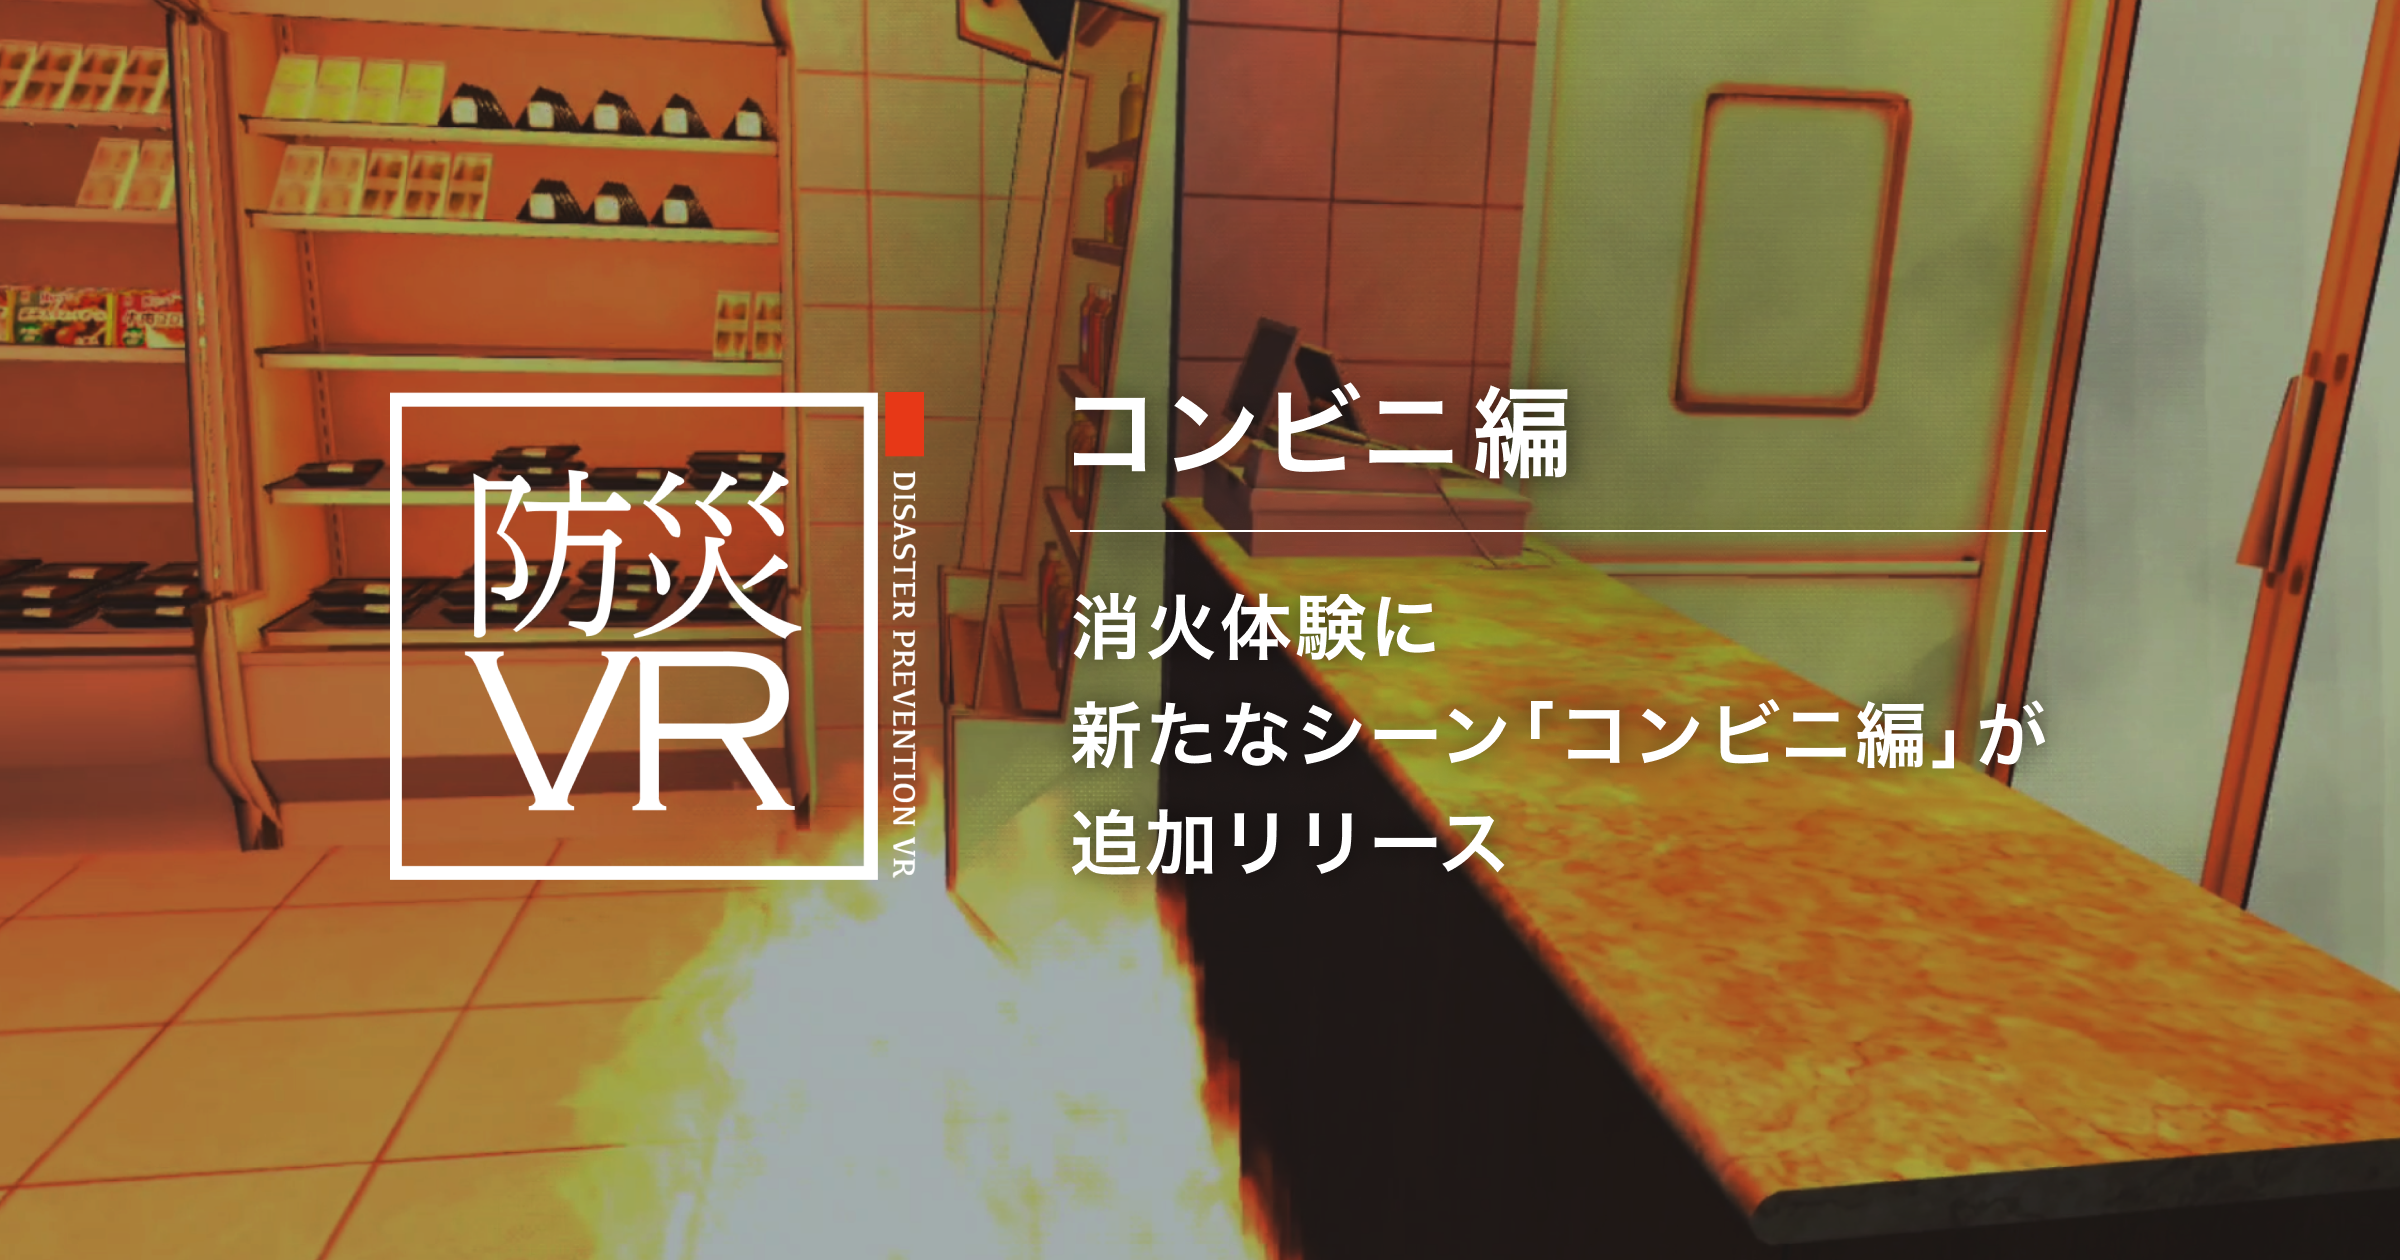 初期消火活動を疑似体験できる VRコンテンツ 「防災VR 火災体験」の新シーン「コンビニ編」をリリース